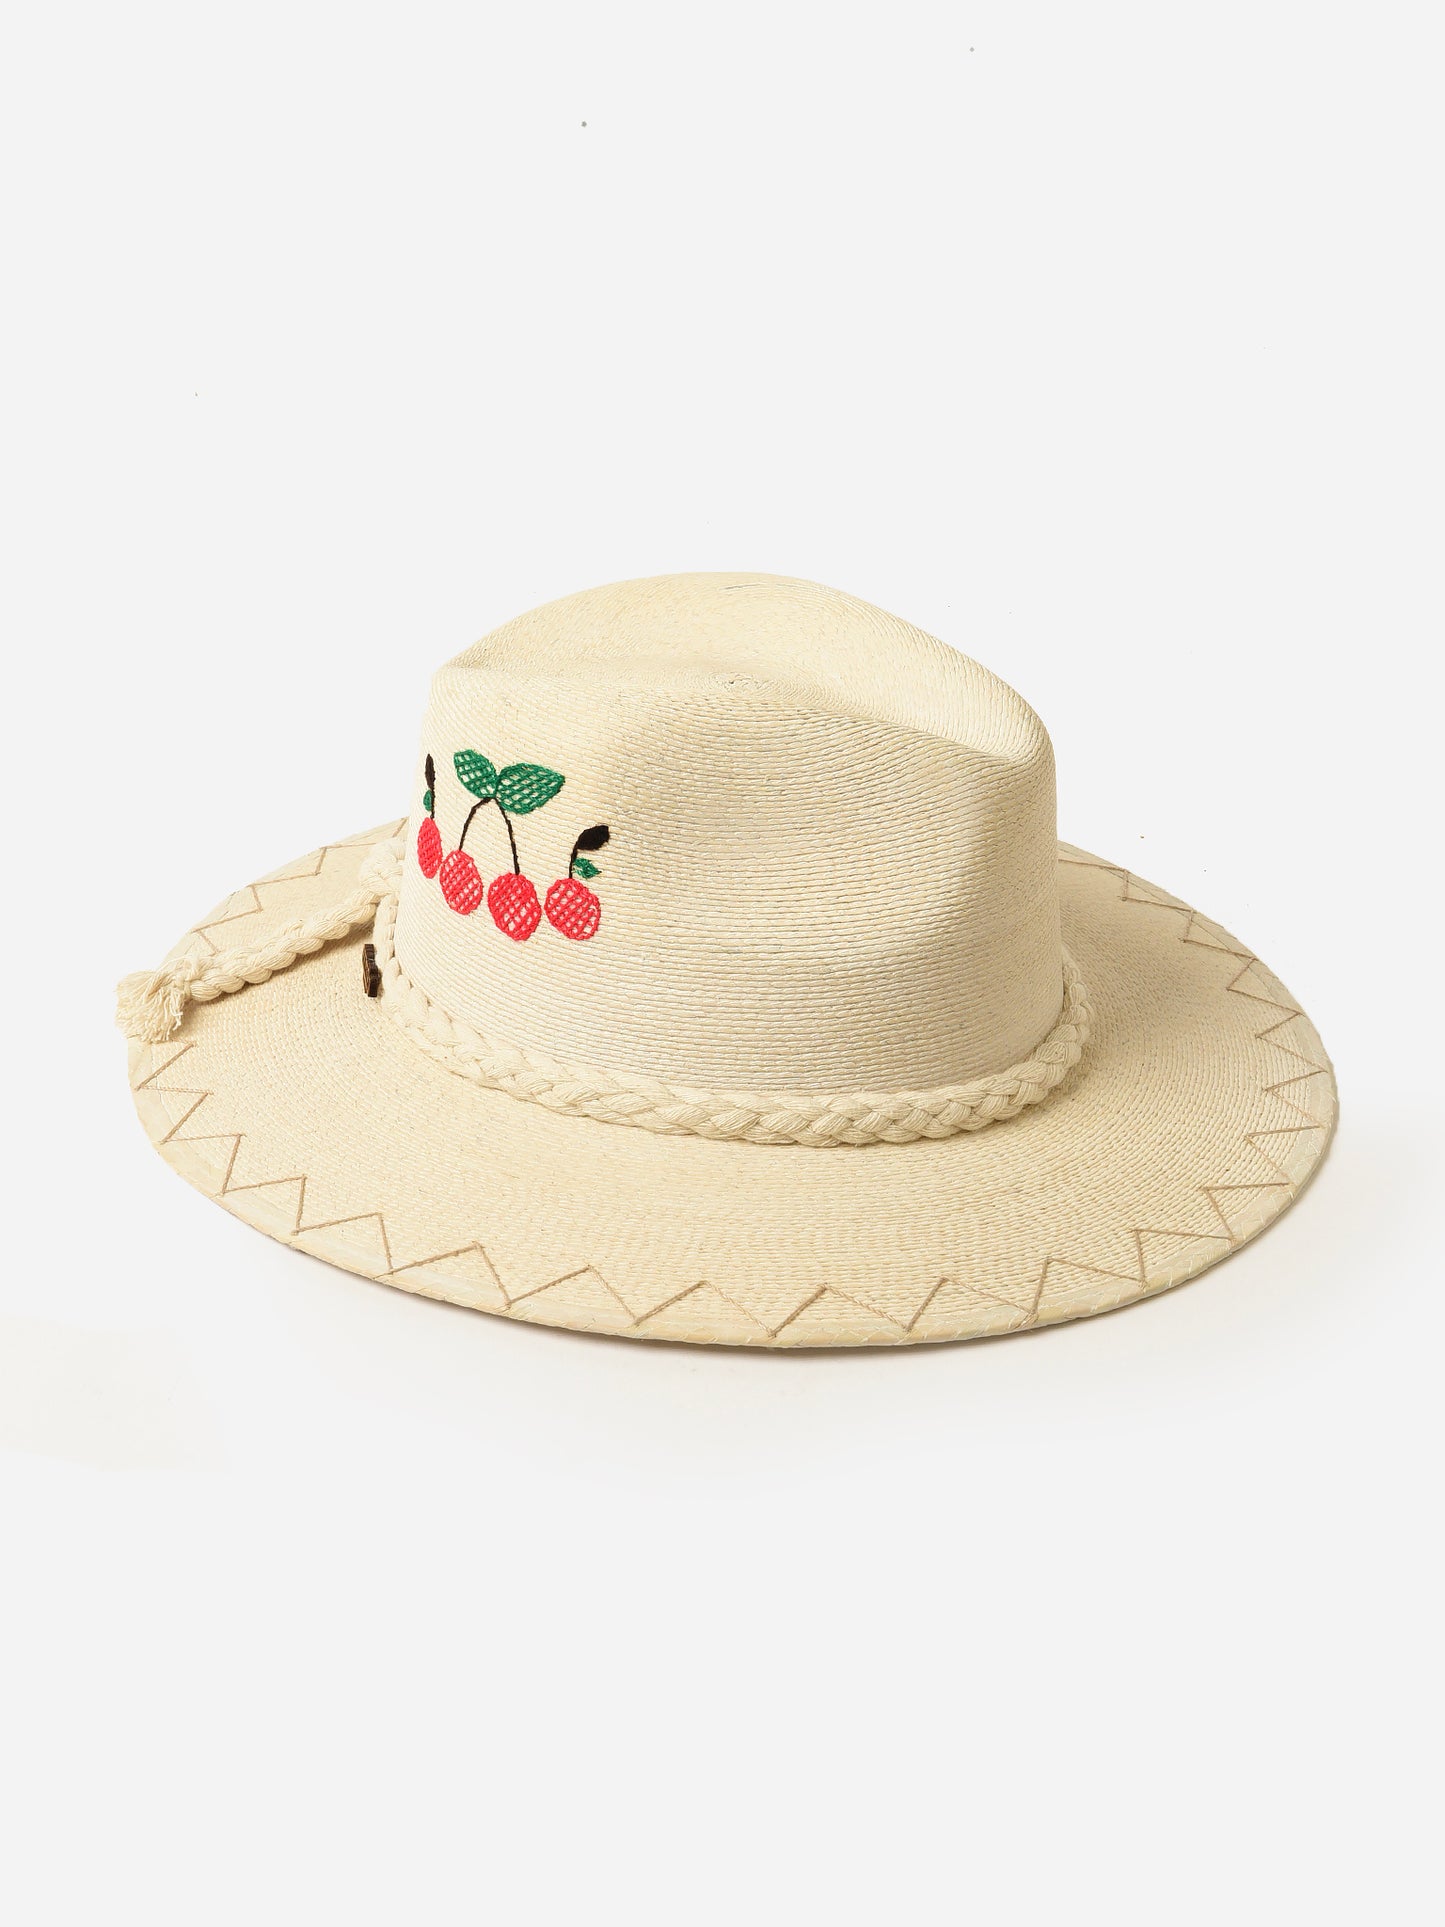 Corazon Playero Women's Love Cherry Hat